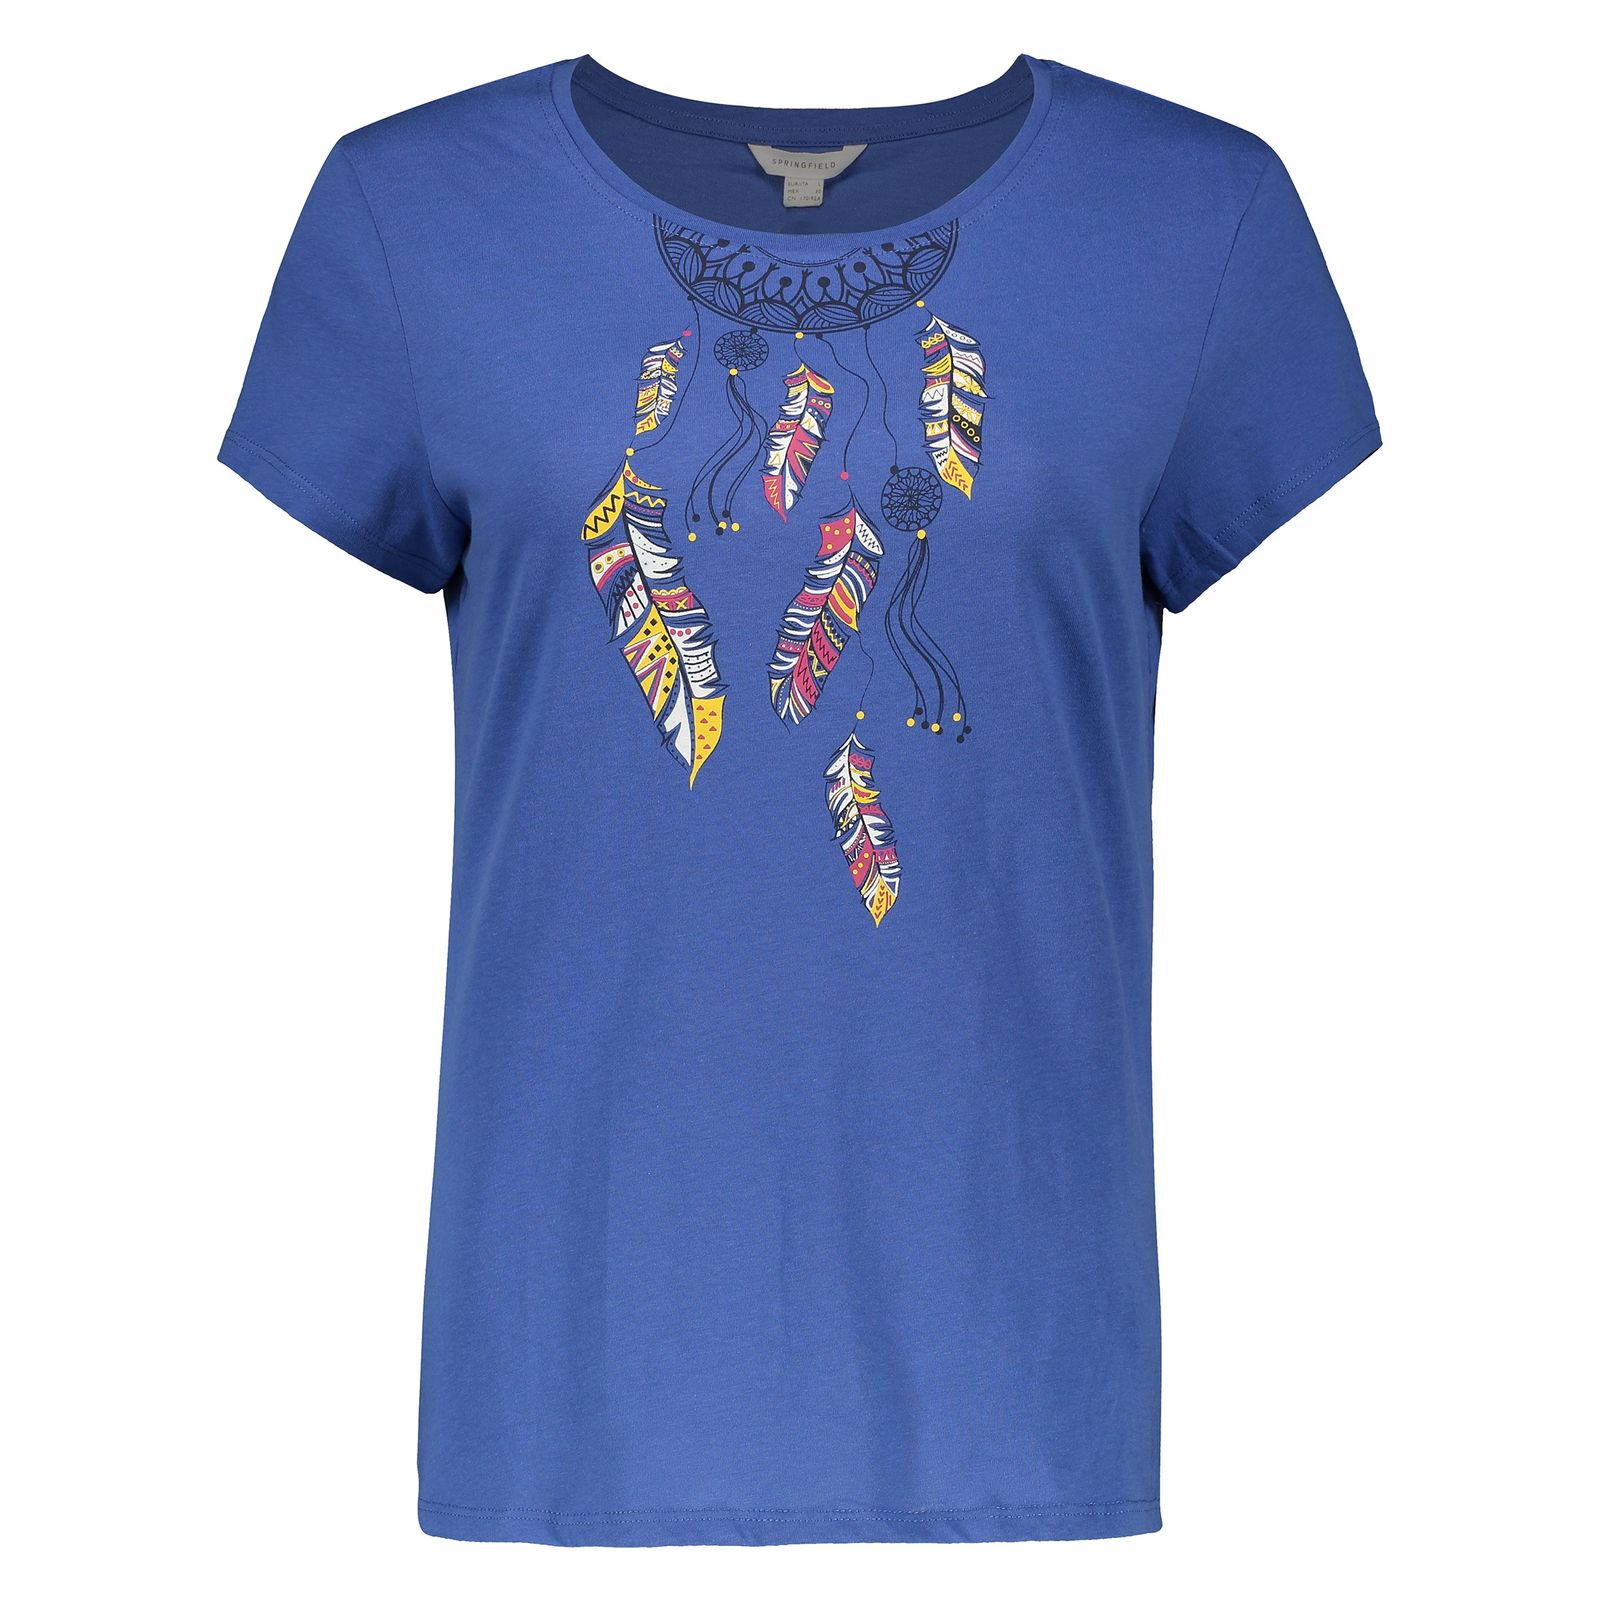 تی شرت زنانه اسپرینگ فیلد مدل 1383531-Blue - آبی - 1